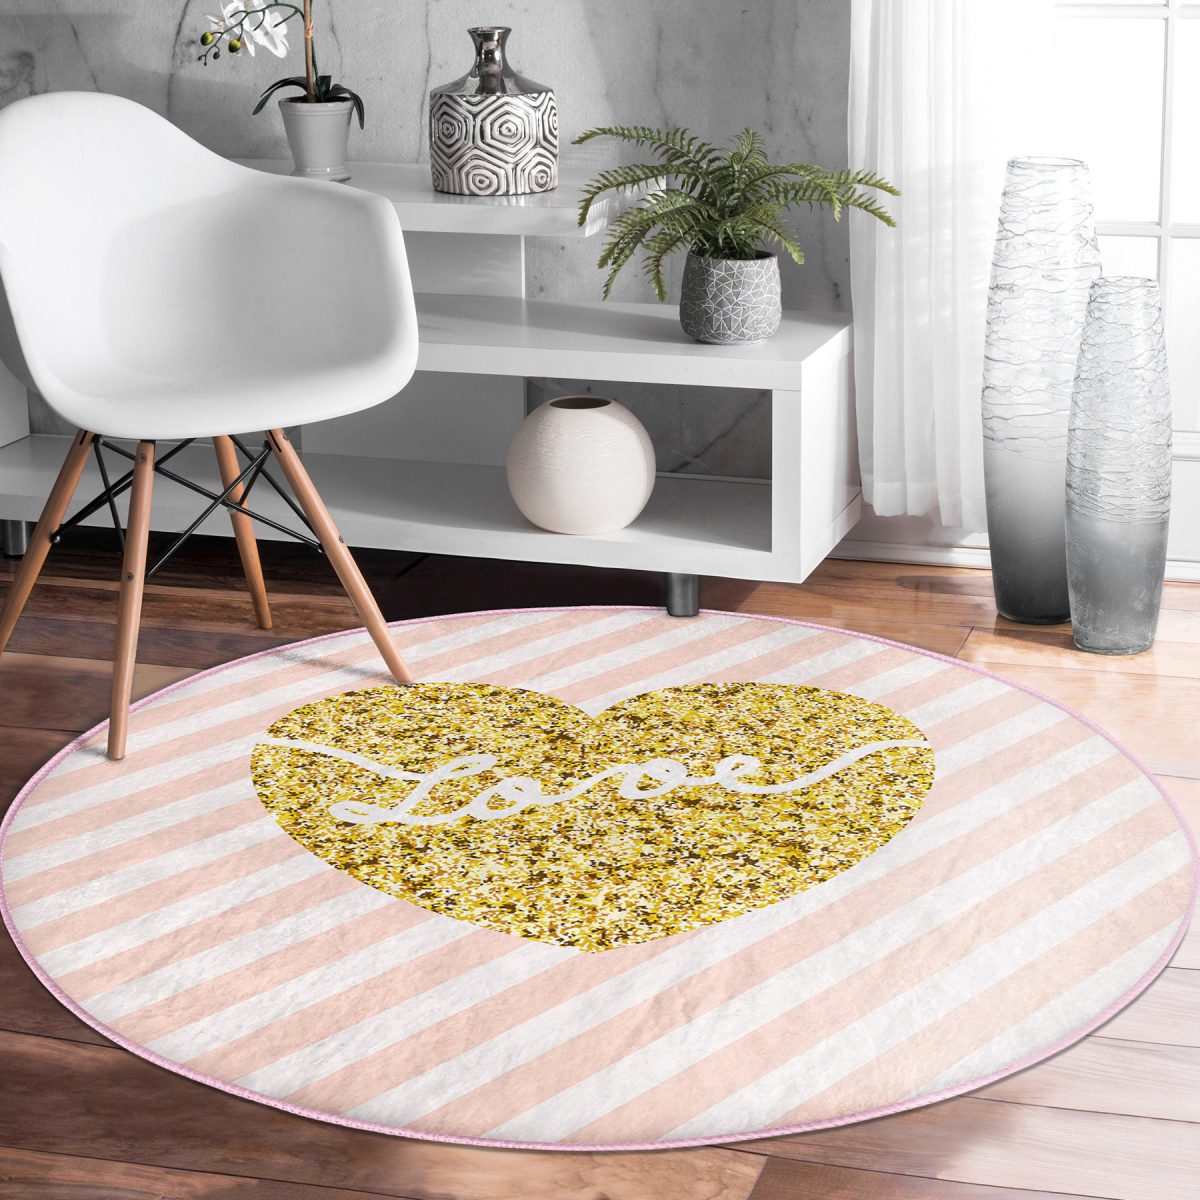 Beyaz Zeminde Gold Renkli Love Yazılı Dijital Baskılı Modern Pembe Mutfak Yıkanabilir Kaymaz Tabanlı Yuvarlak Halı Realhomes